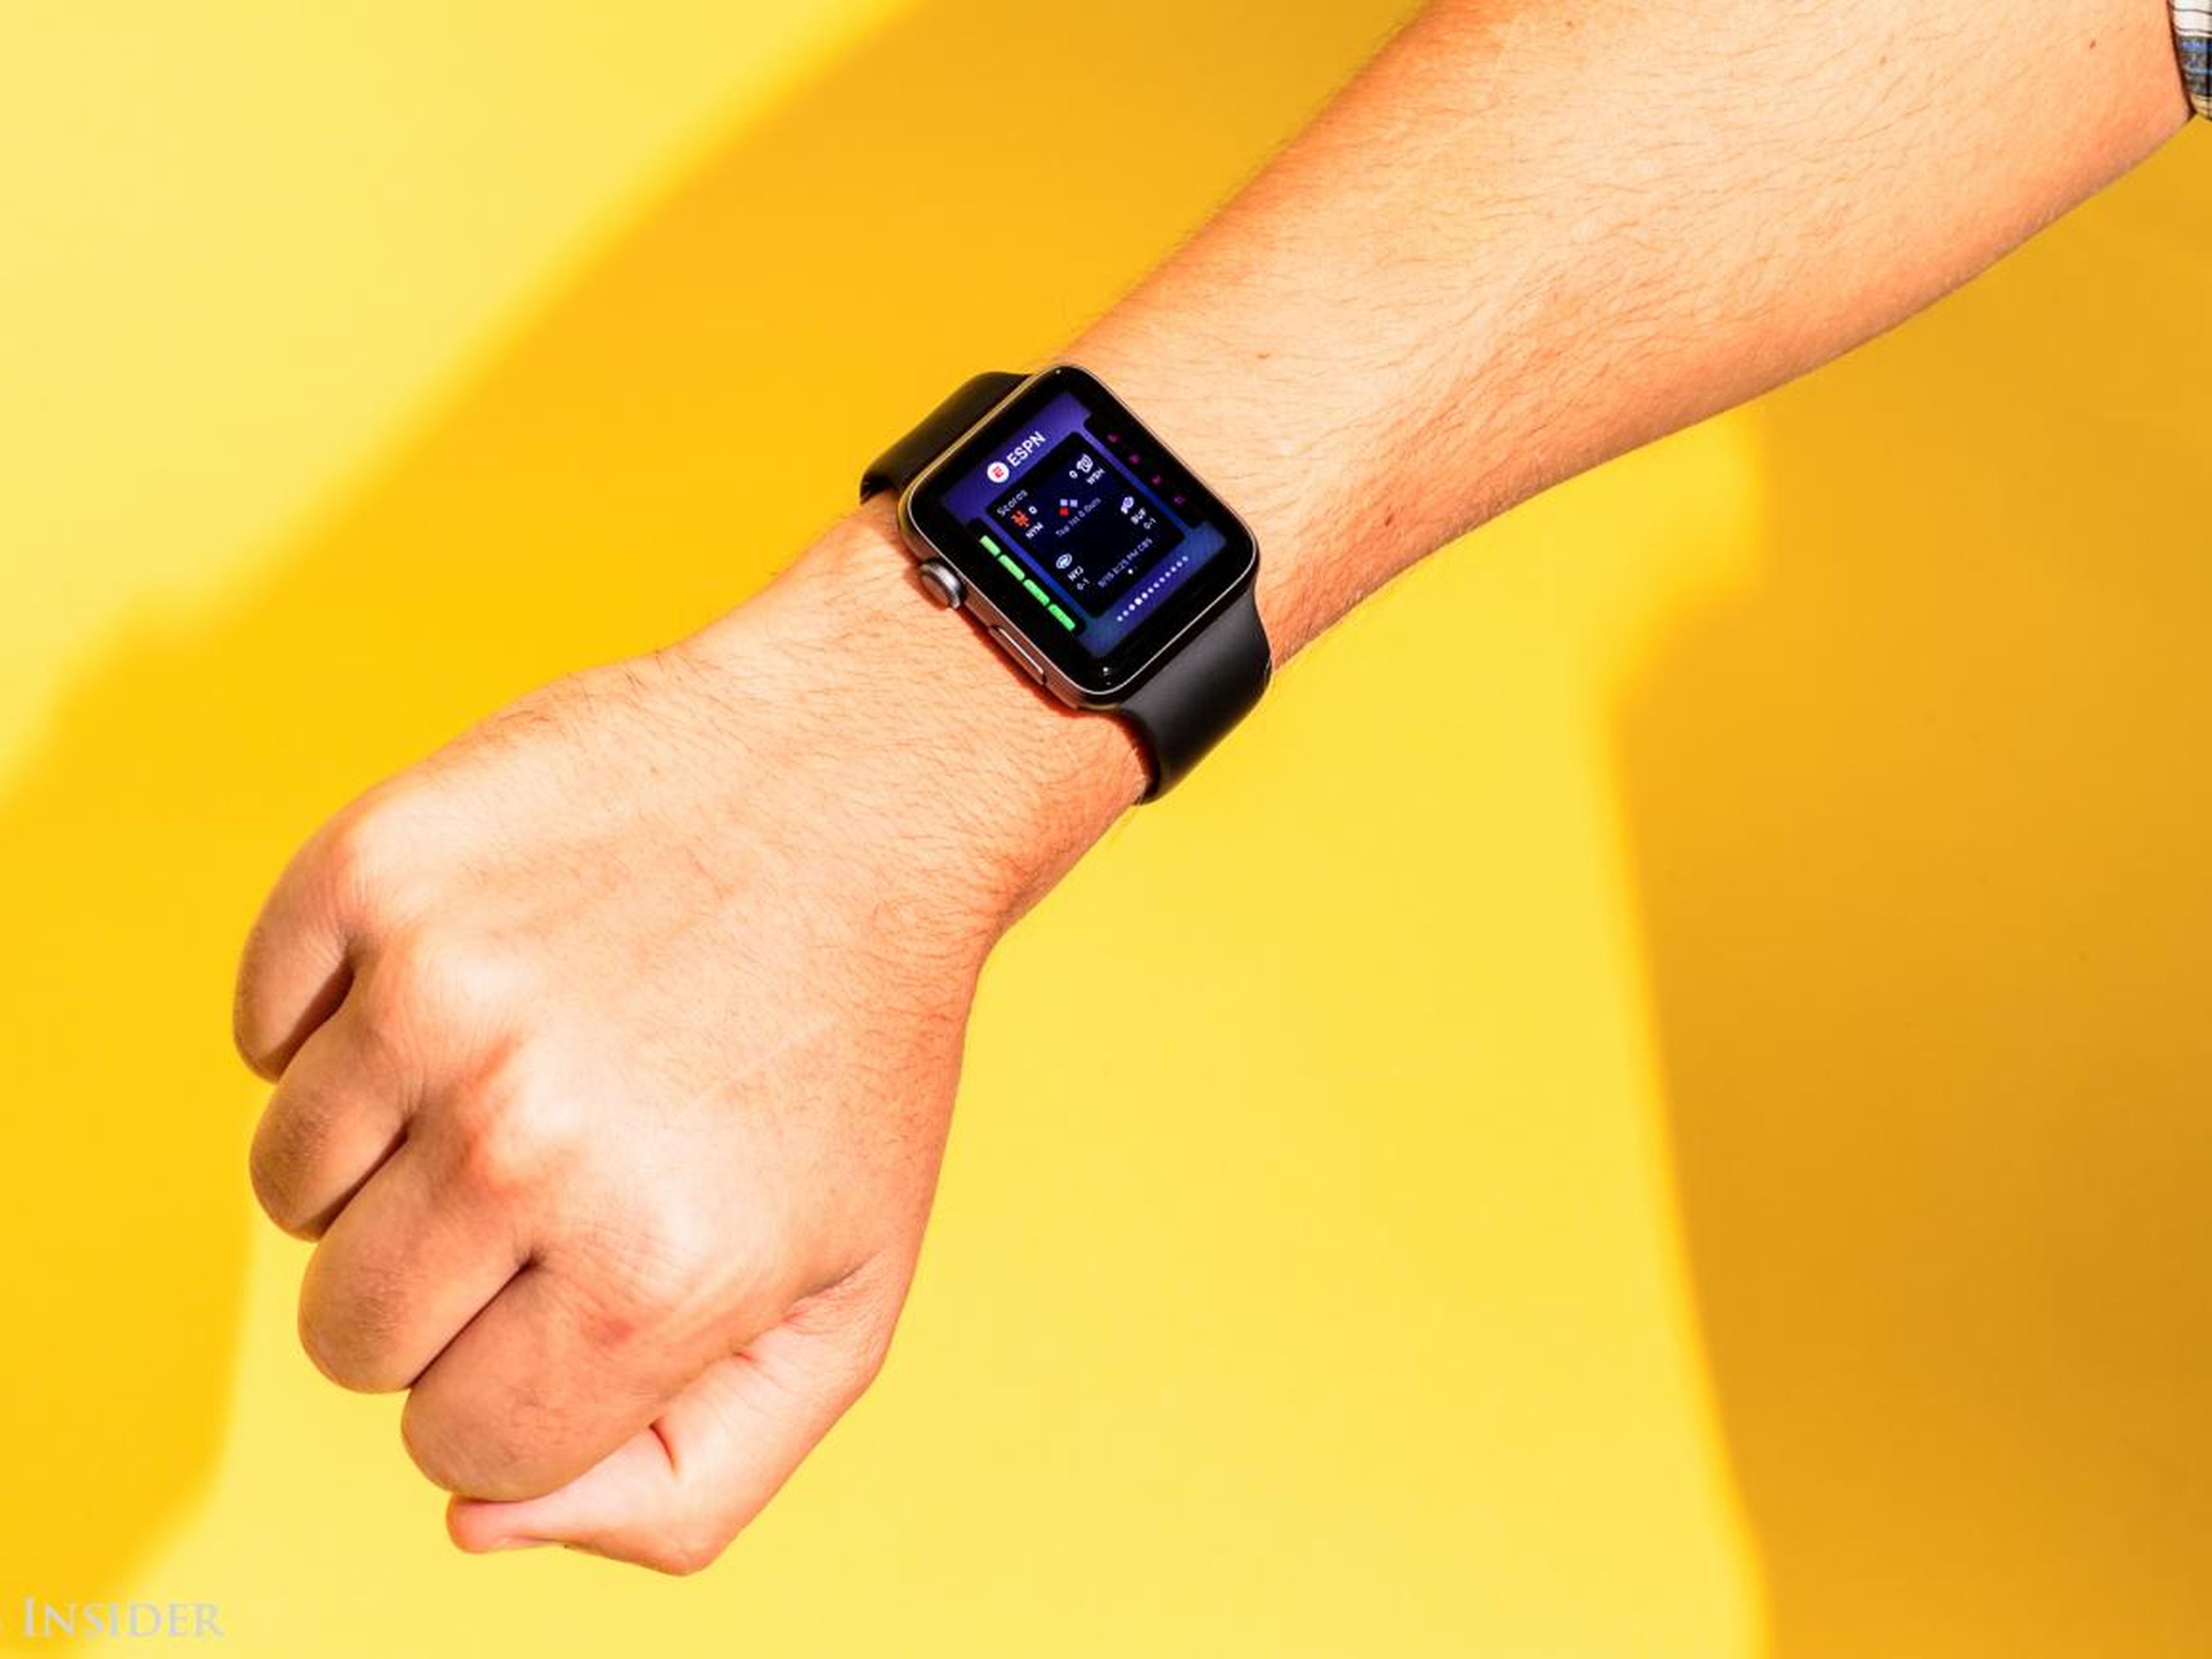 ¿Puede el Apple Watch detectar problemas cardíacos? Un estudio dice que sí, pero con ciertas consideraciones.